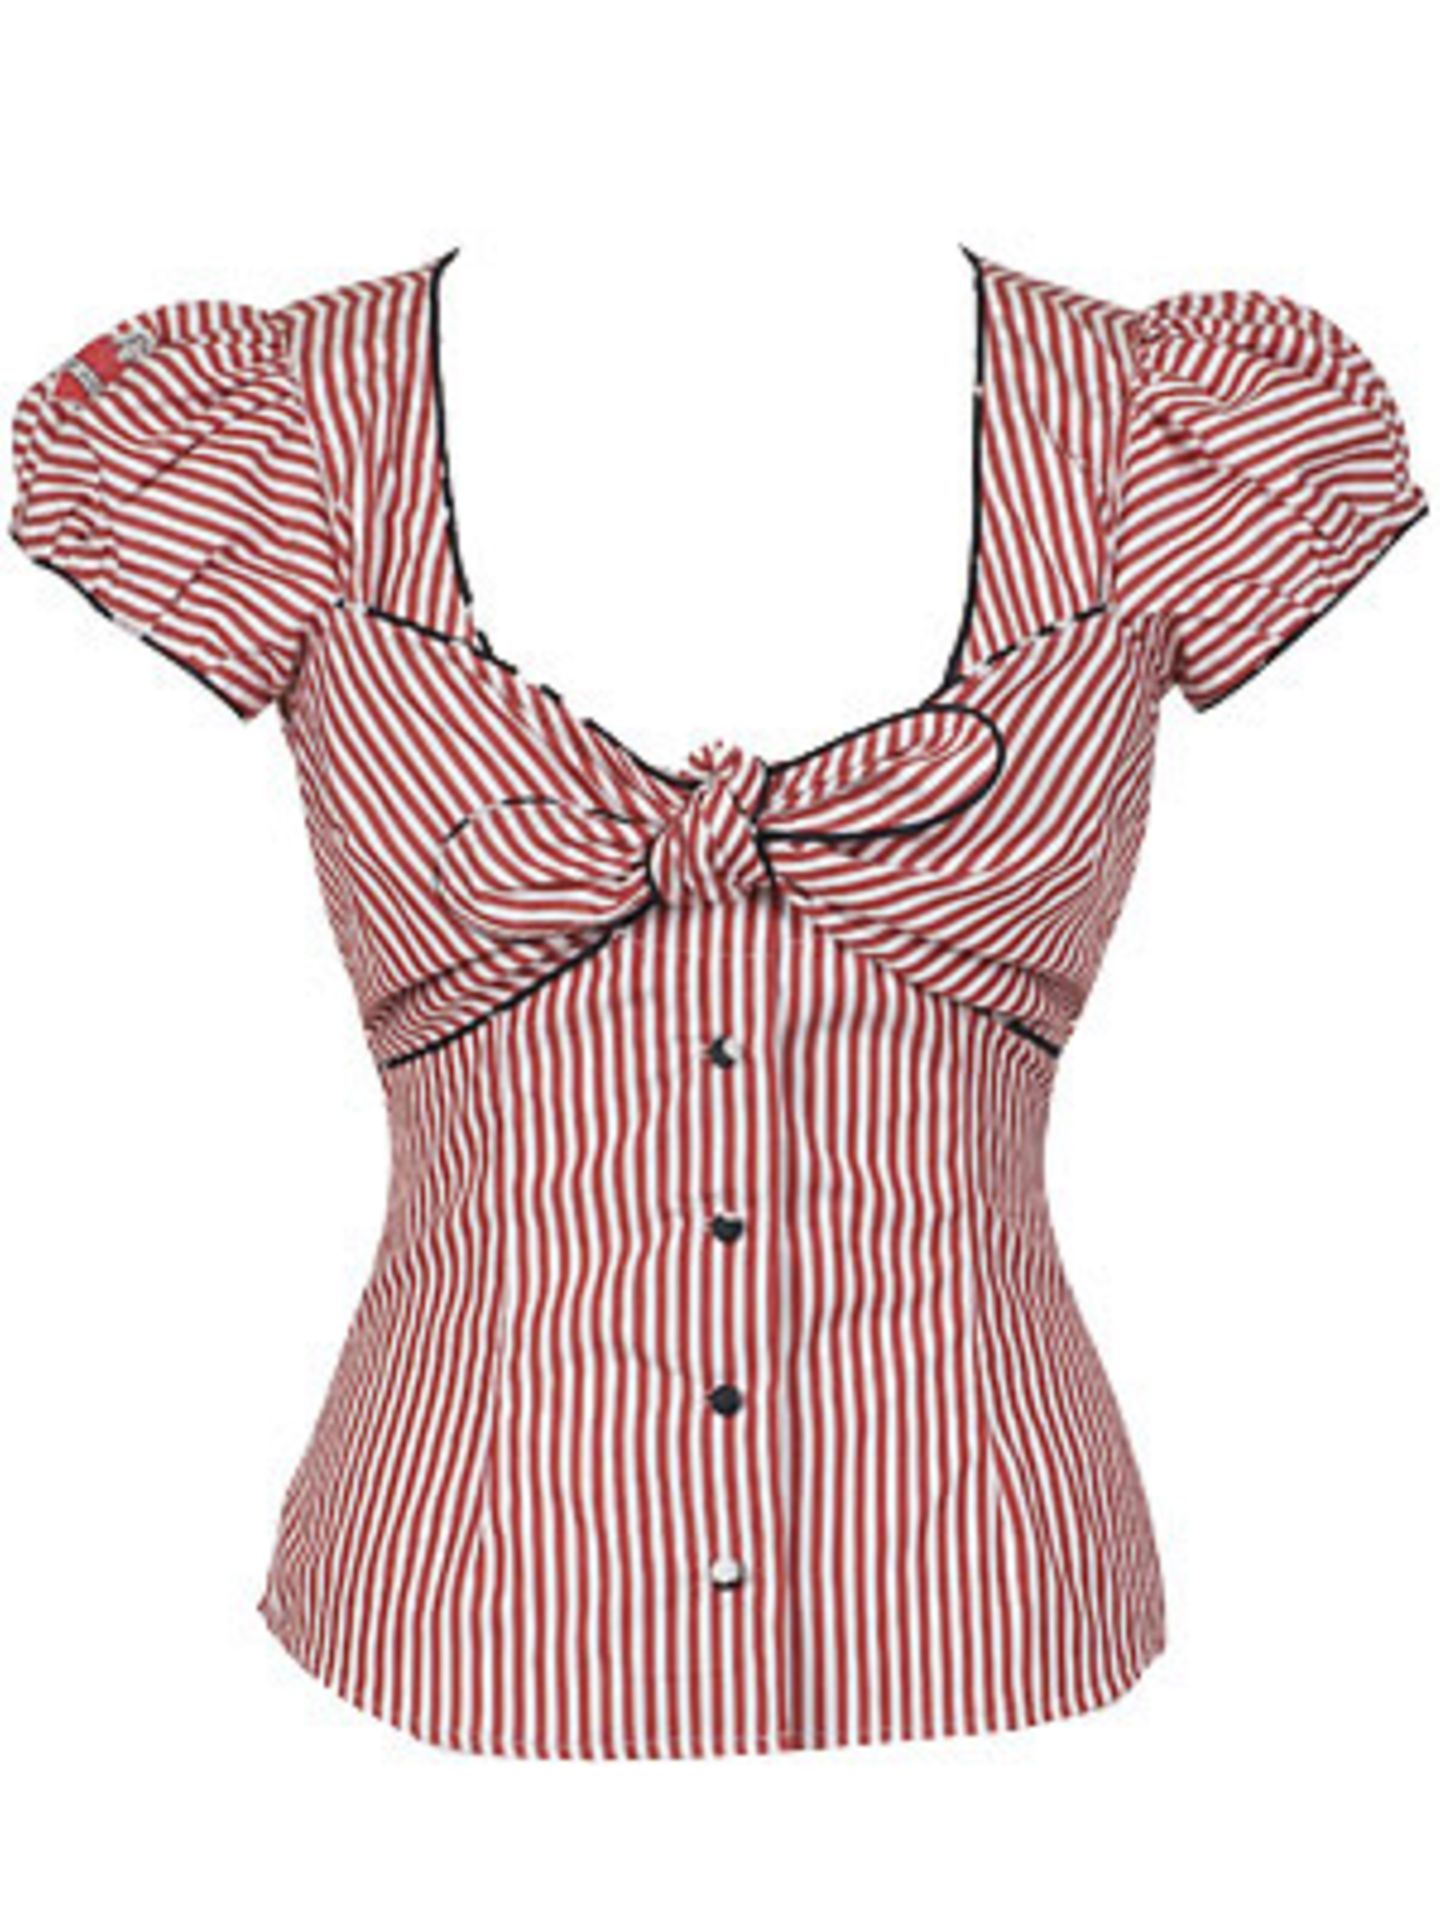 Weibliche, taillierte Bluse mit roten Streifen und Schleife von Lena Hoschek, um 190 Euro.